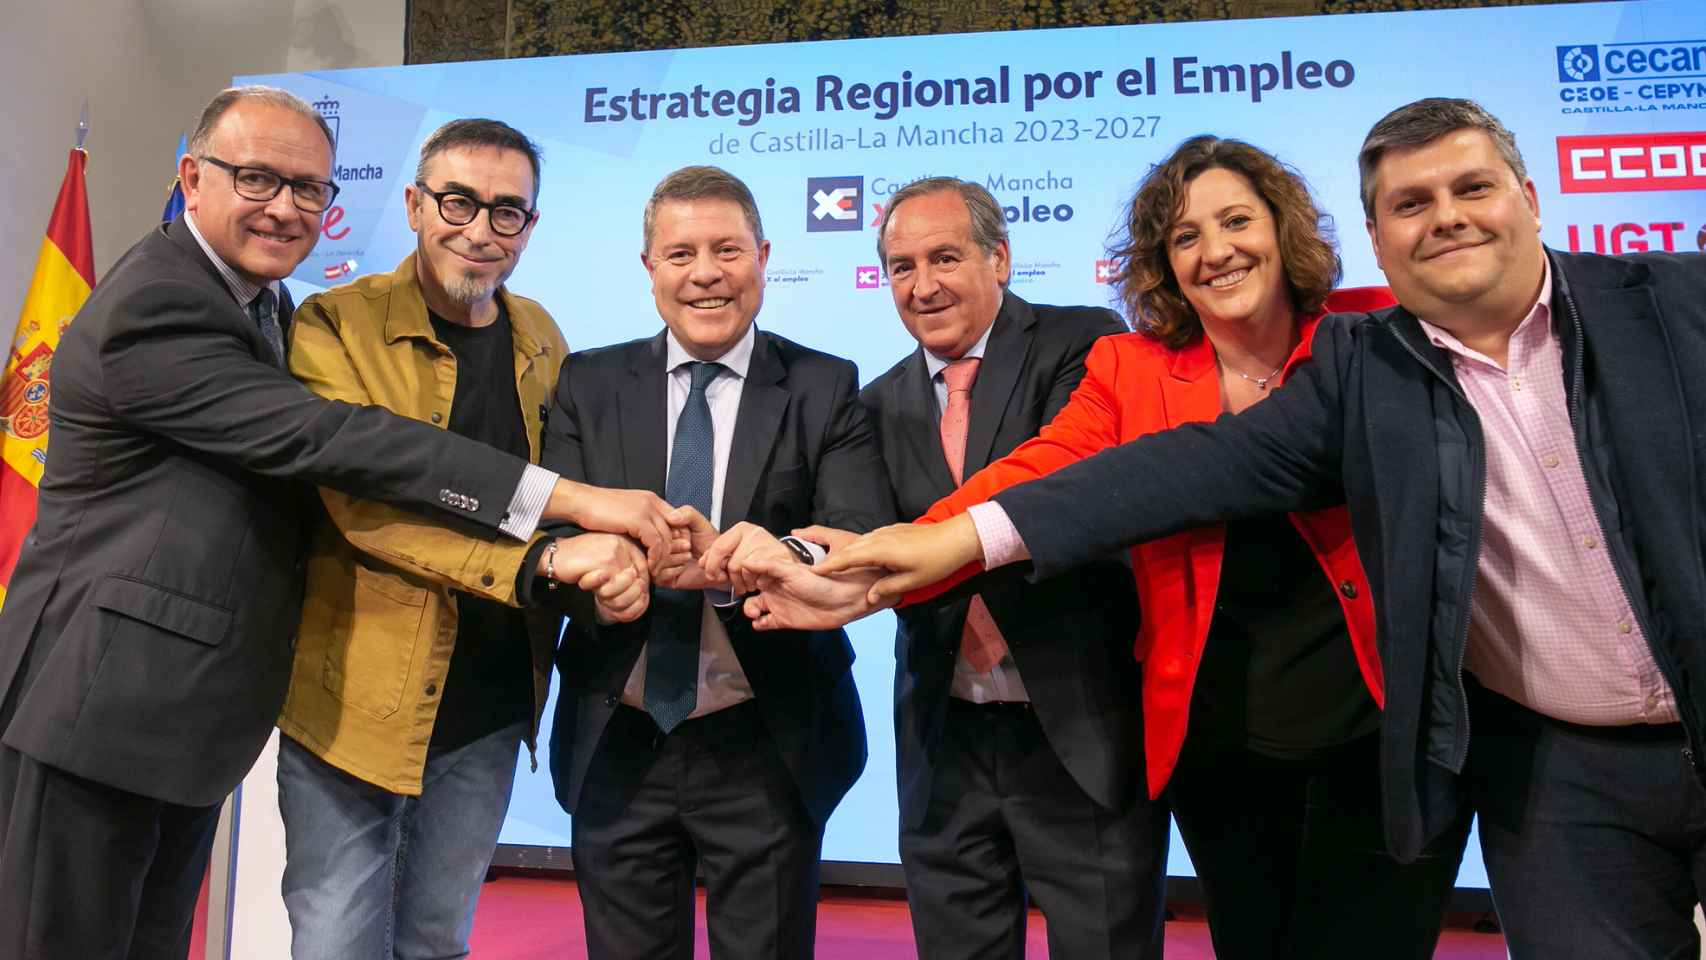 Presentación de la Estrategia por el Empleo de Castilla-La Mancha 2023-2027. Foto: JCCM.